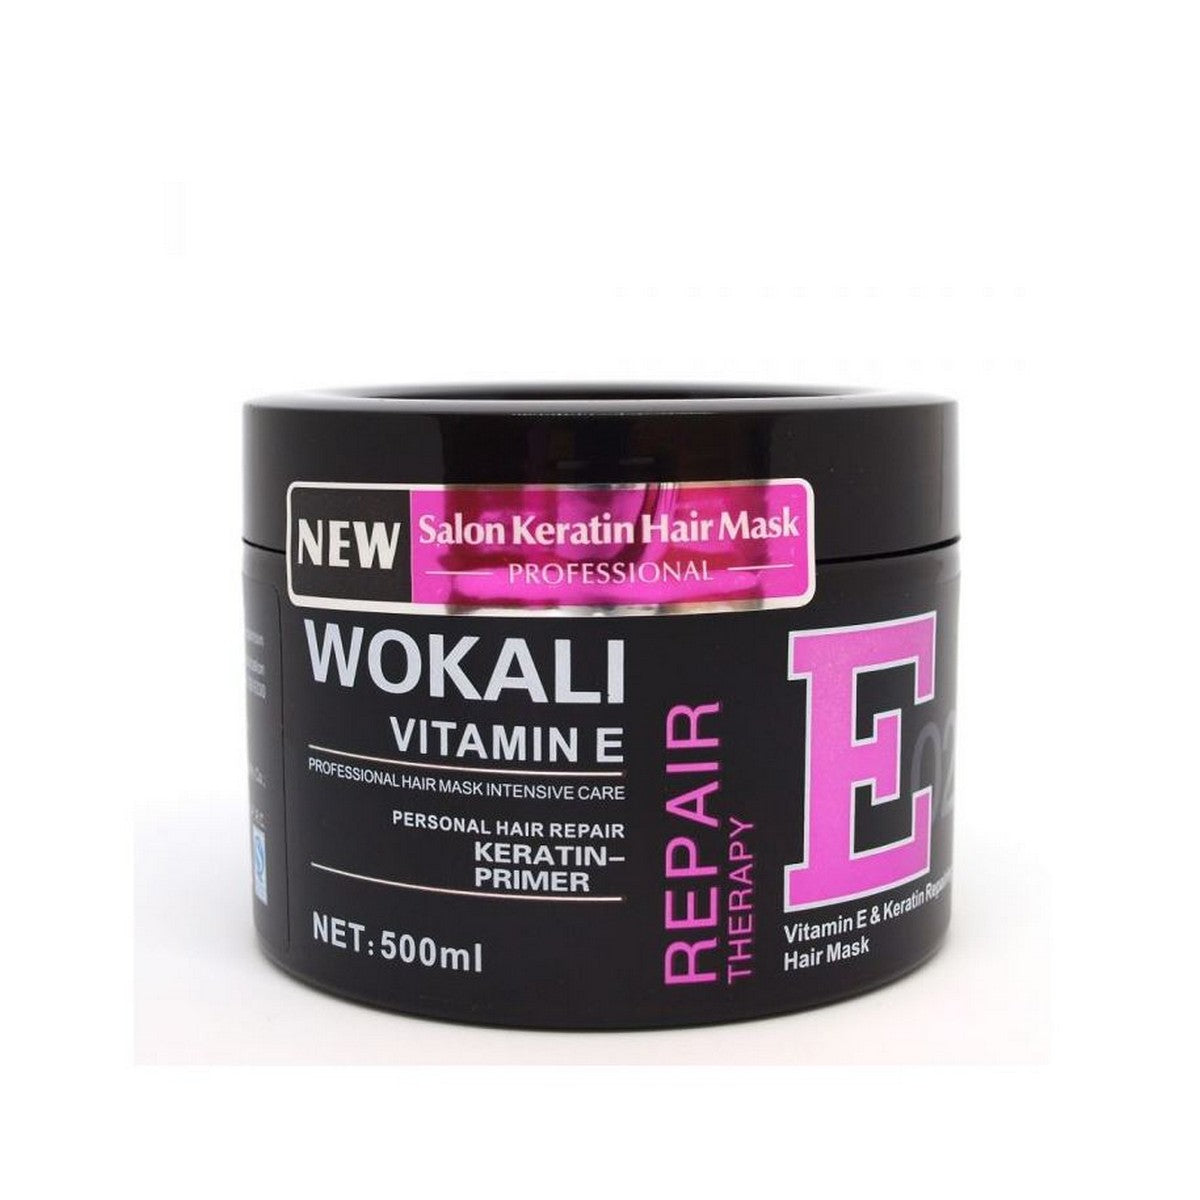 Wokali hair spa cream and hair mask with vitamin E hair treatment formula (500 ml)